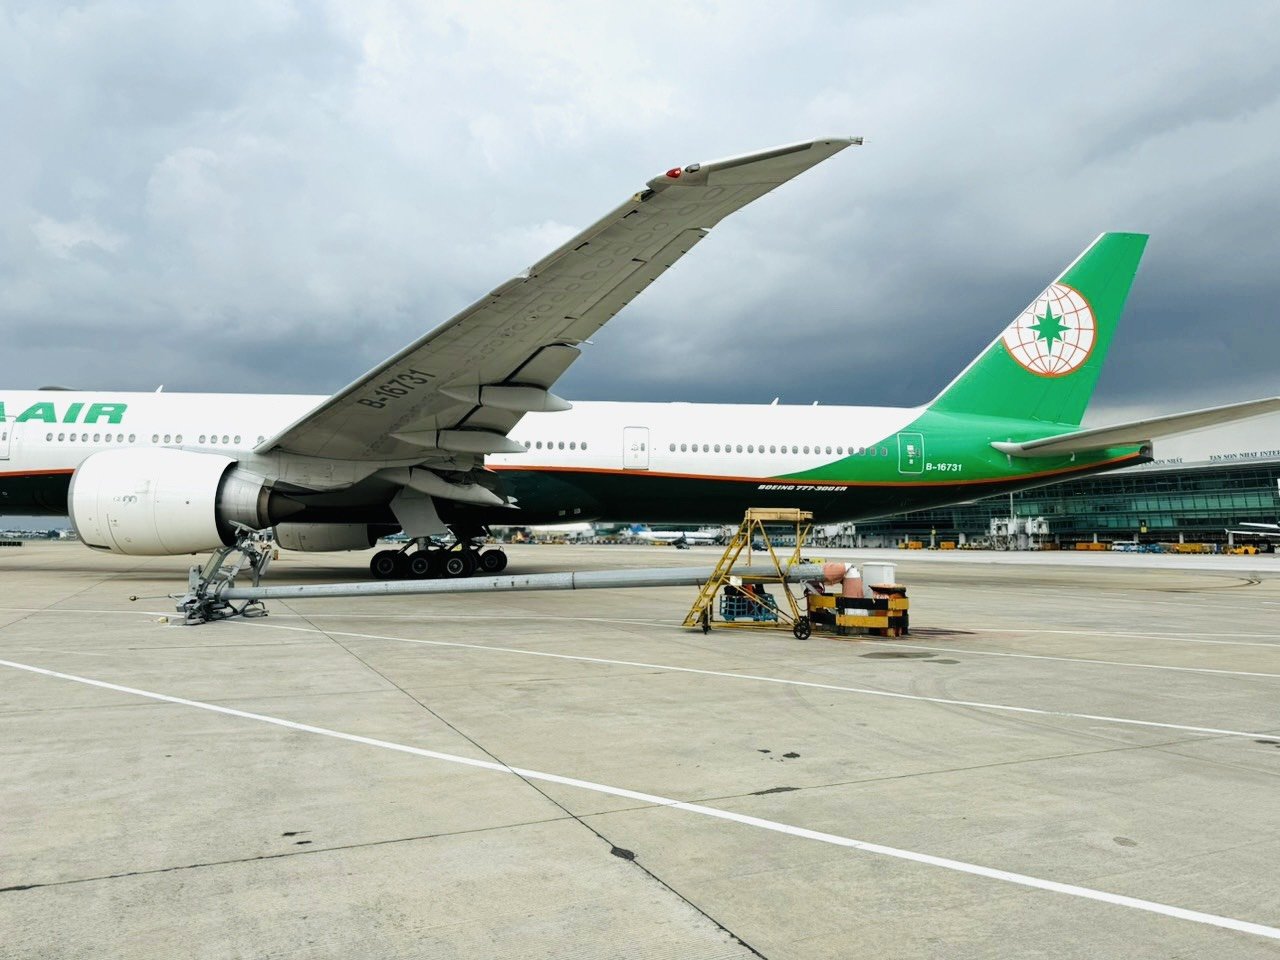 Máy bay móp cánh vì “đi nhầm” bến đậu, đâm gãy cột đèn tại sân bay Tân Sơn Nhất - 1